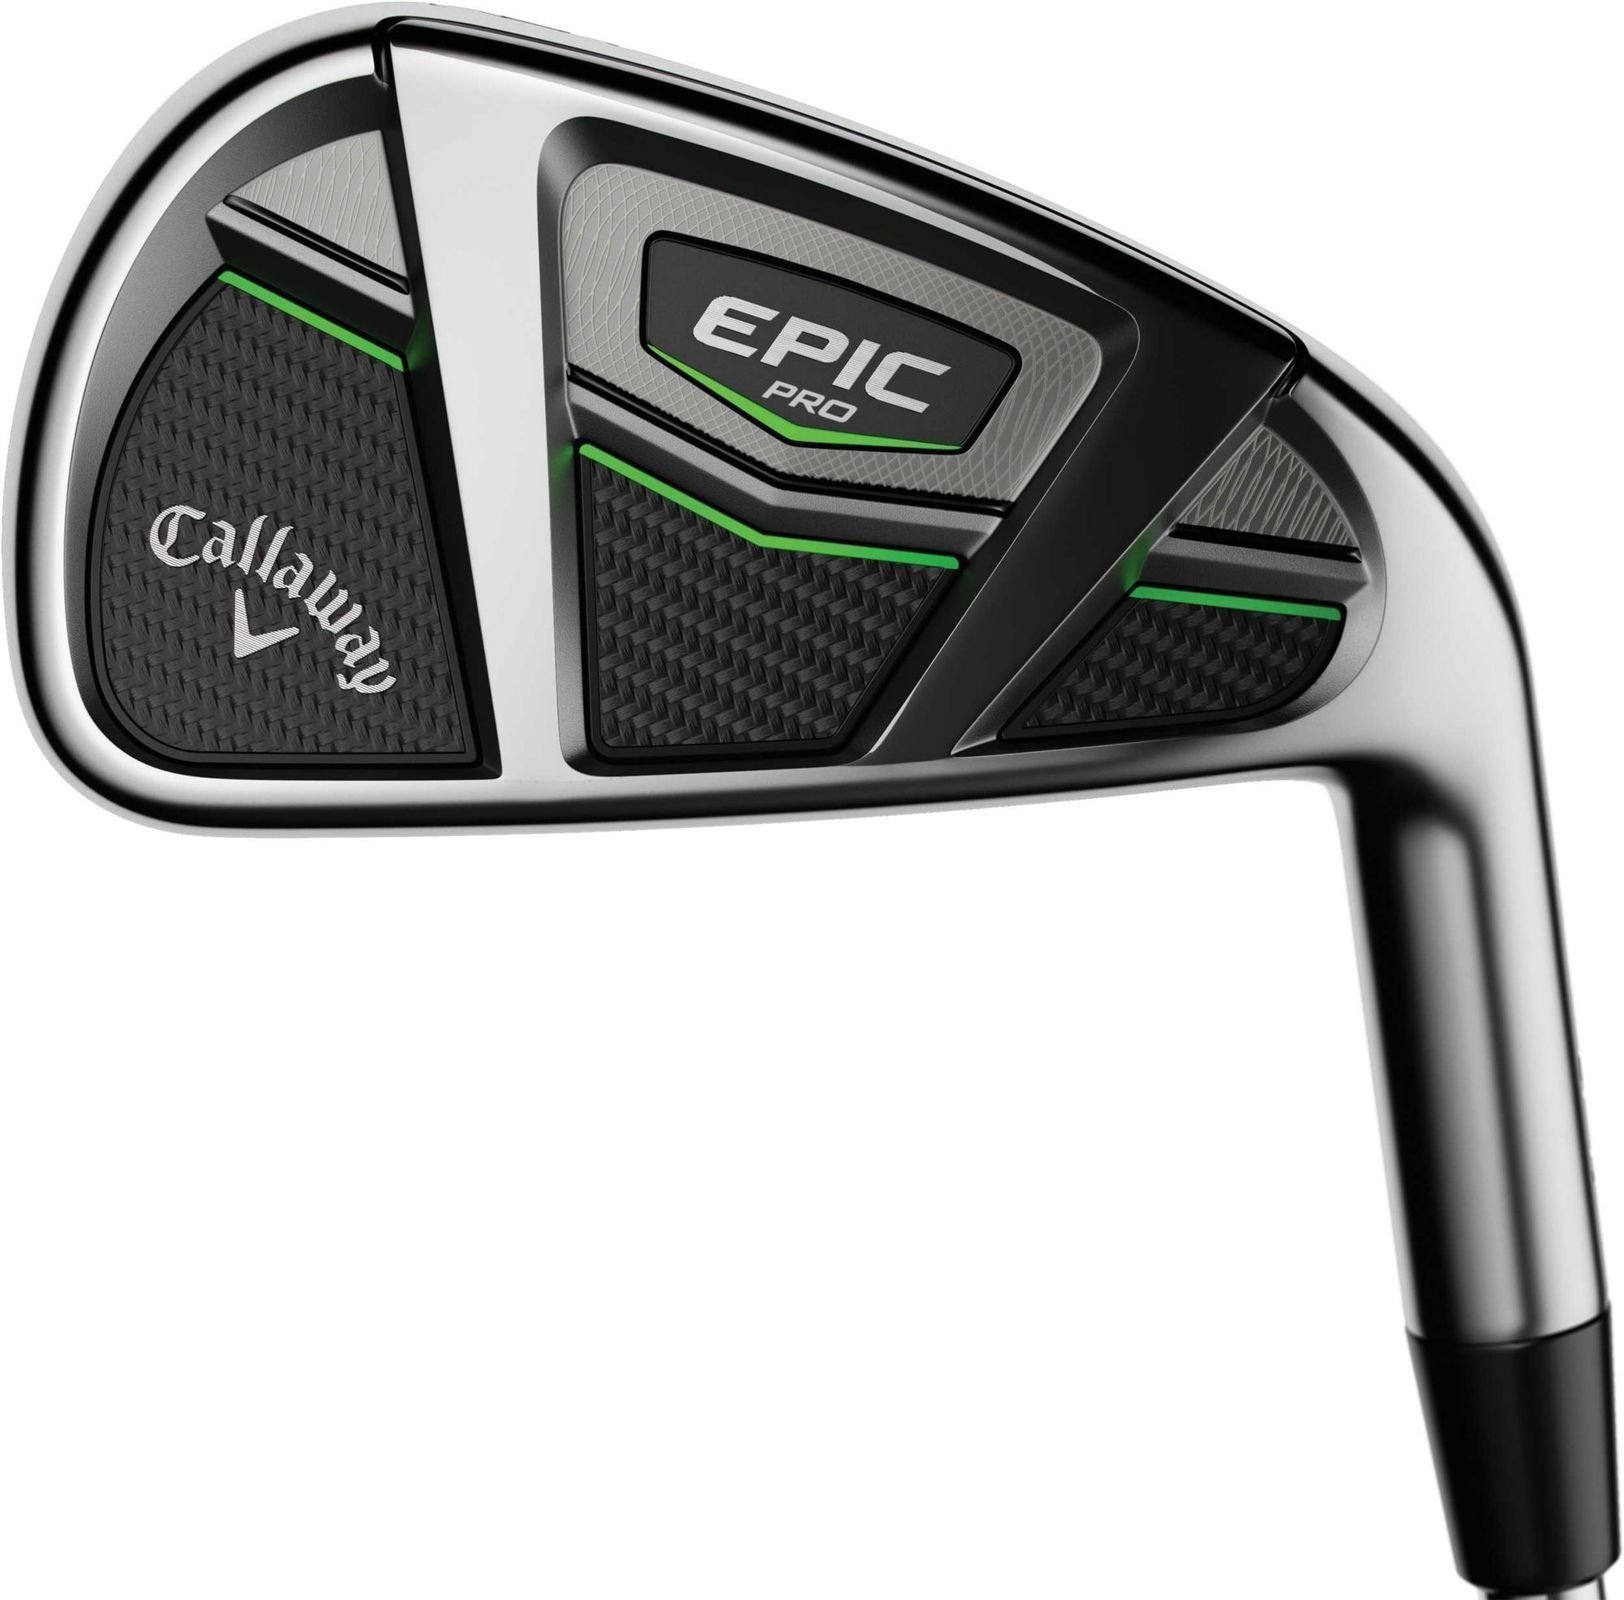 Club de golf - fers Callaway Epic Pro série de fers gauchier acier Stiff 4-PW